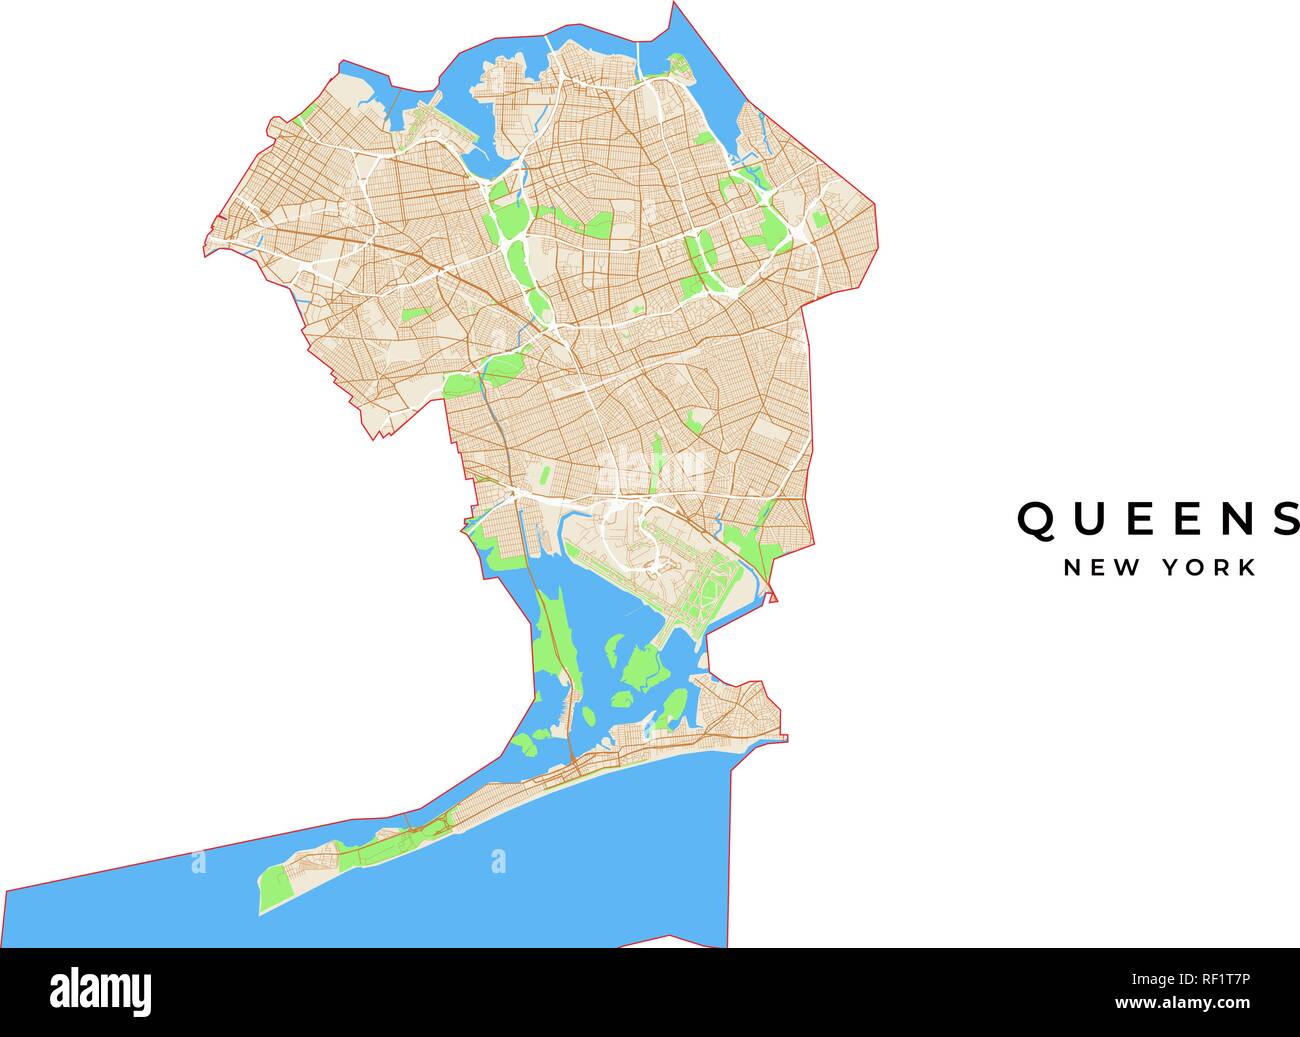 Vektorkarte von Queens, New York, USA. Verschiedene Farben für Straßen, Parks, Wasser und Grenze. Stock Vektor